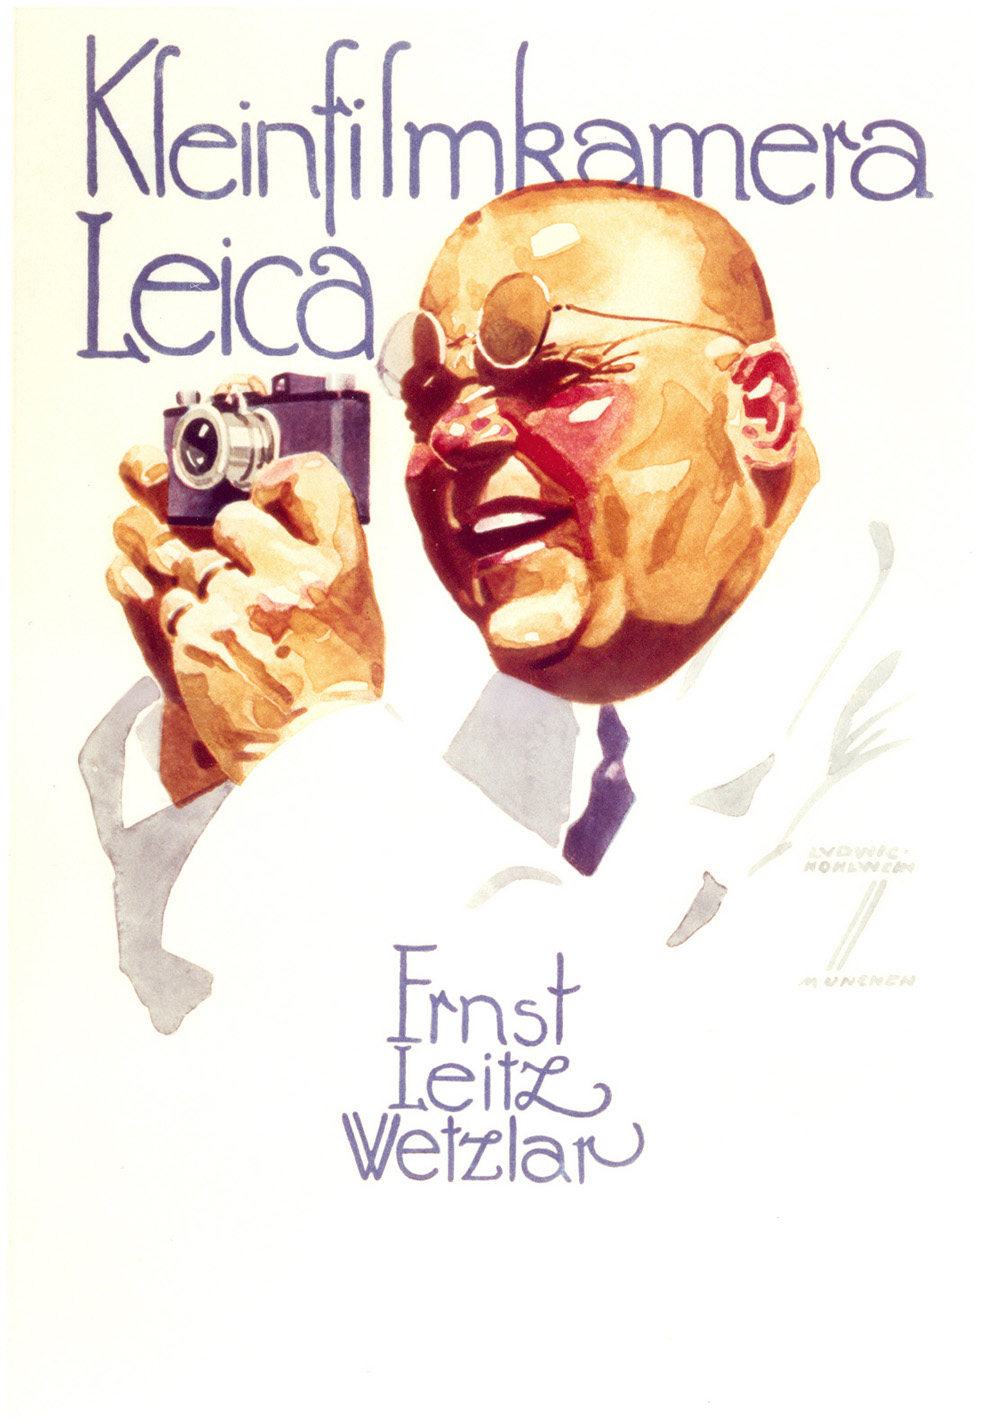 Leica Anzeigenmotiv von Ludwig Hohlwein, 1926 (erschienen in »Die Reklame«, Berlin 1926). © Leica Camera AG 